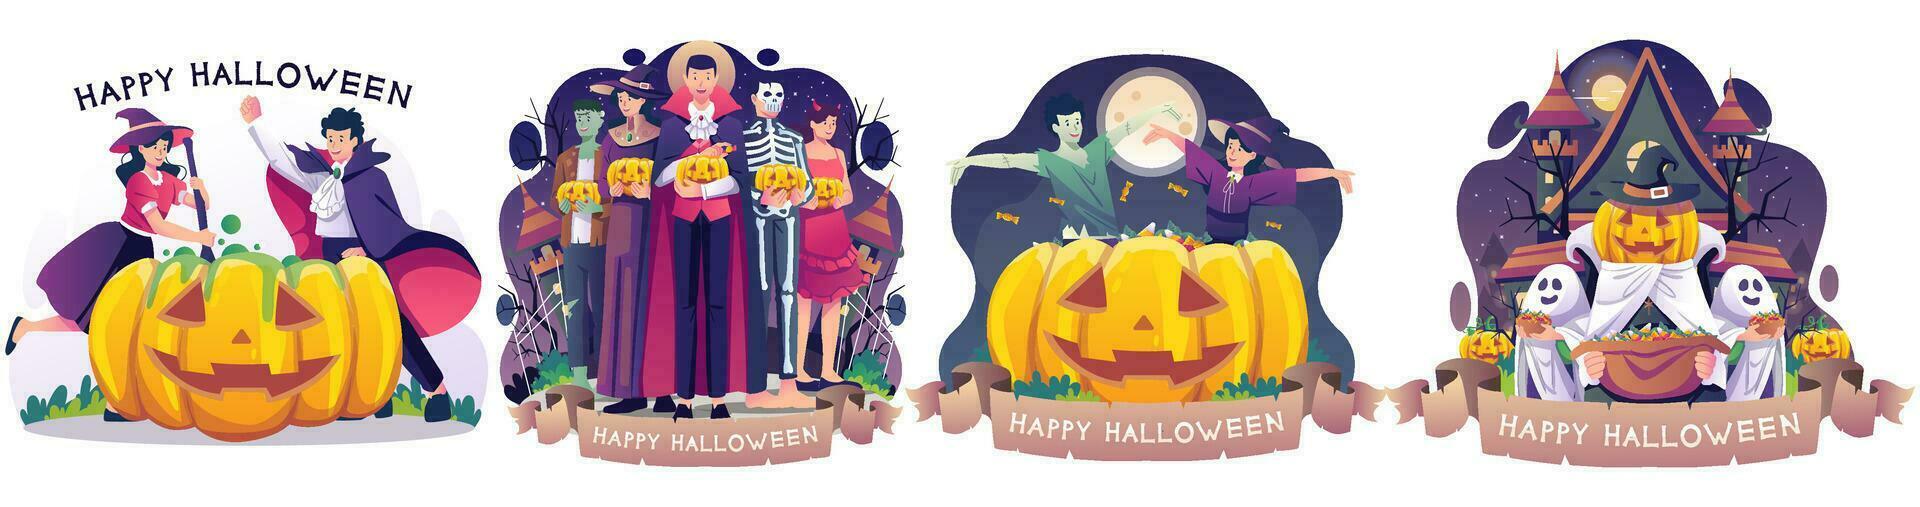 einstellen von Halloween Konzept Illustration mit Menschen im Kostüme feiern Halloween Illustration vektor